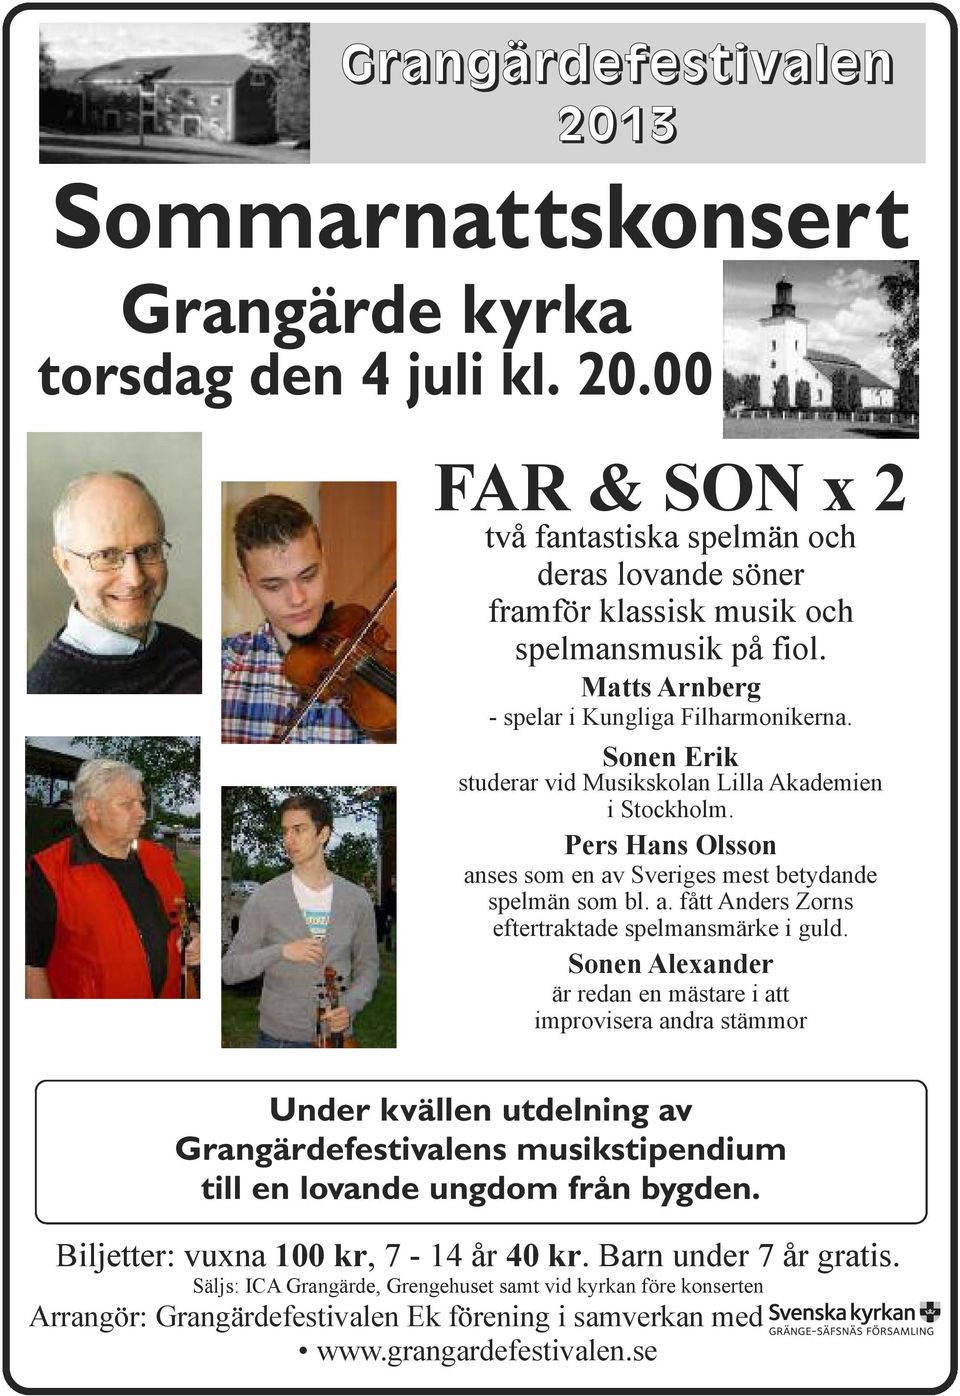 Sonen Alexander är redan en mästare i att improvisera andra stämmor Under kvällen utdelning av Grangärdefestivalens musikstipendium till en lovande ungdom från bygden.